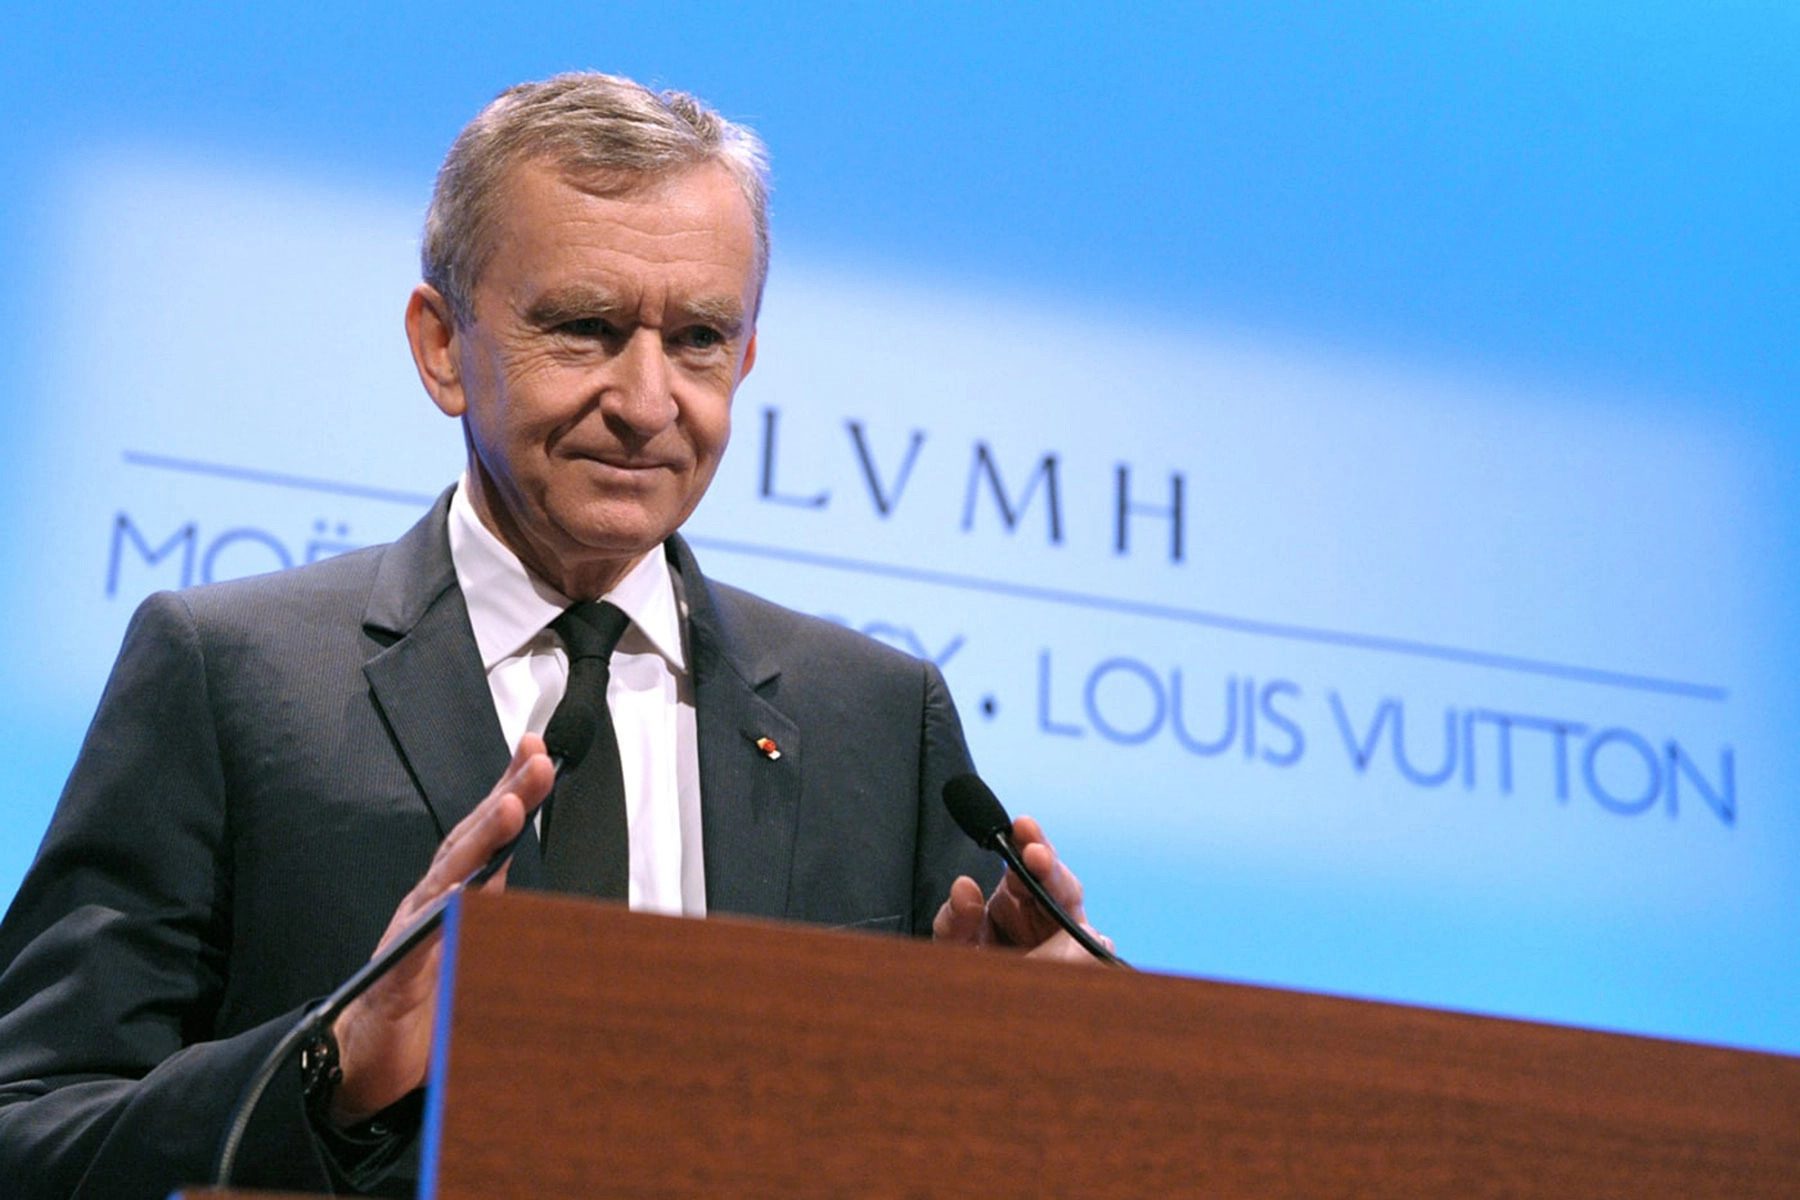 Tin vui: Ai sở hữu cổ phiếu Louis Vuitton sắp nhận về thêm 17.44% lợi nhuận!